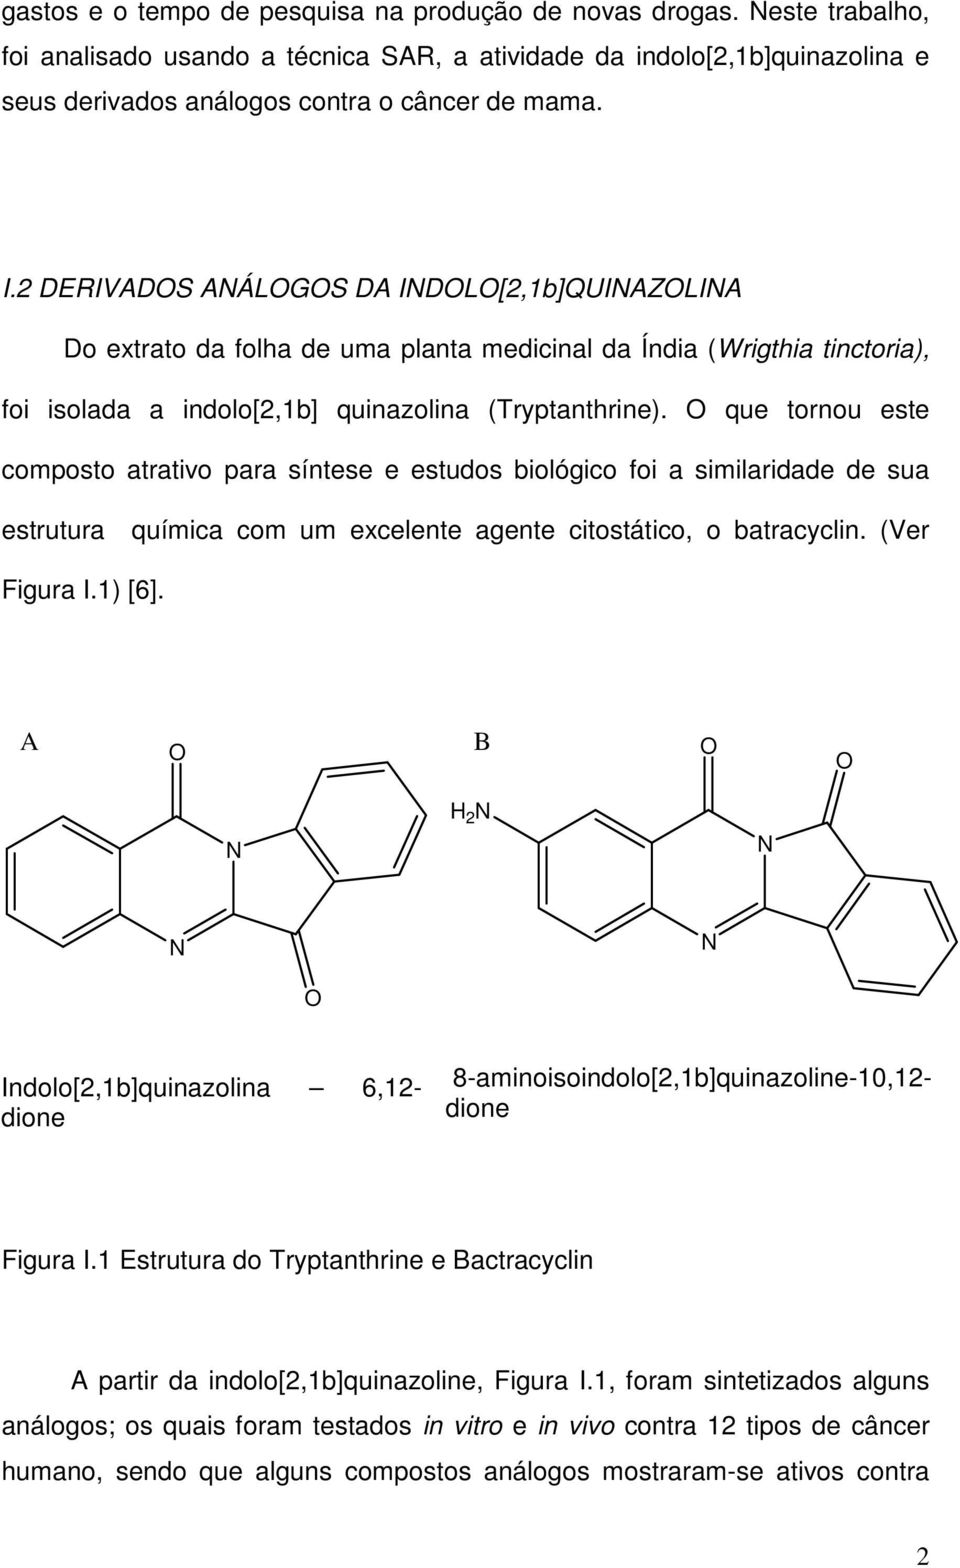 O que tornou este composto atrativo para síntese e estudos biológico foi a similaridade de sua estrutura química com um excelente agente citostático, o batracyclin. (Ver Figura I.1) [6].